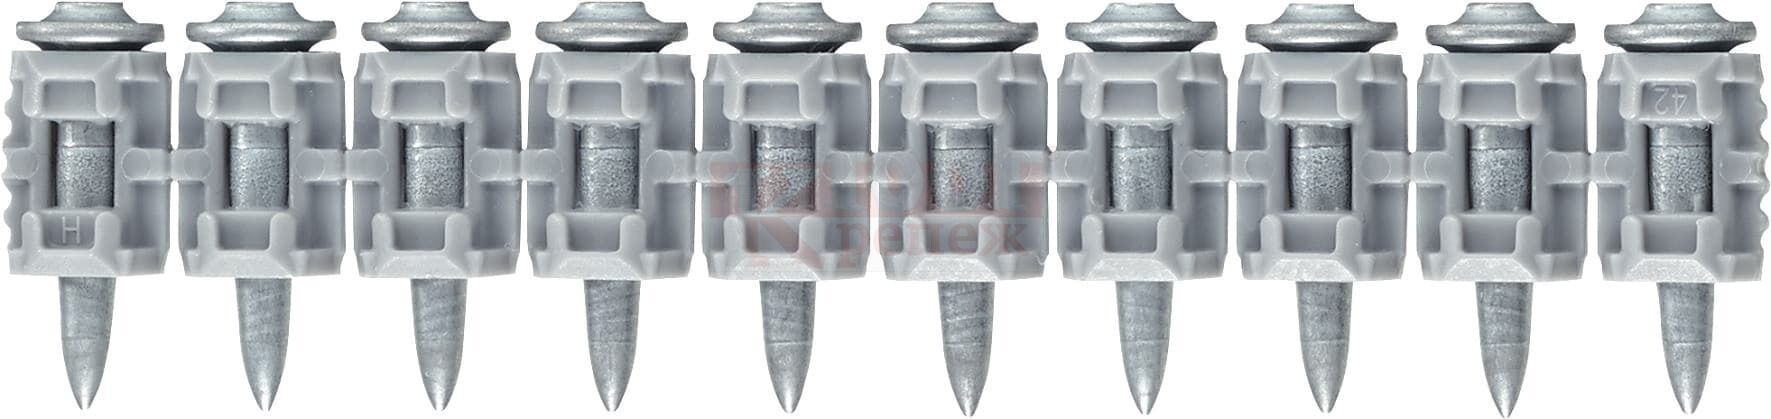 X-P 20 G3 MX Гвоздь монтажный по бетону HILTI для GX 3, GX 3-ME оц. сталь, 20x3 мм 3xGC 42 (3600 шт.)